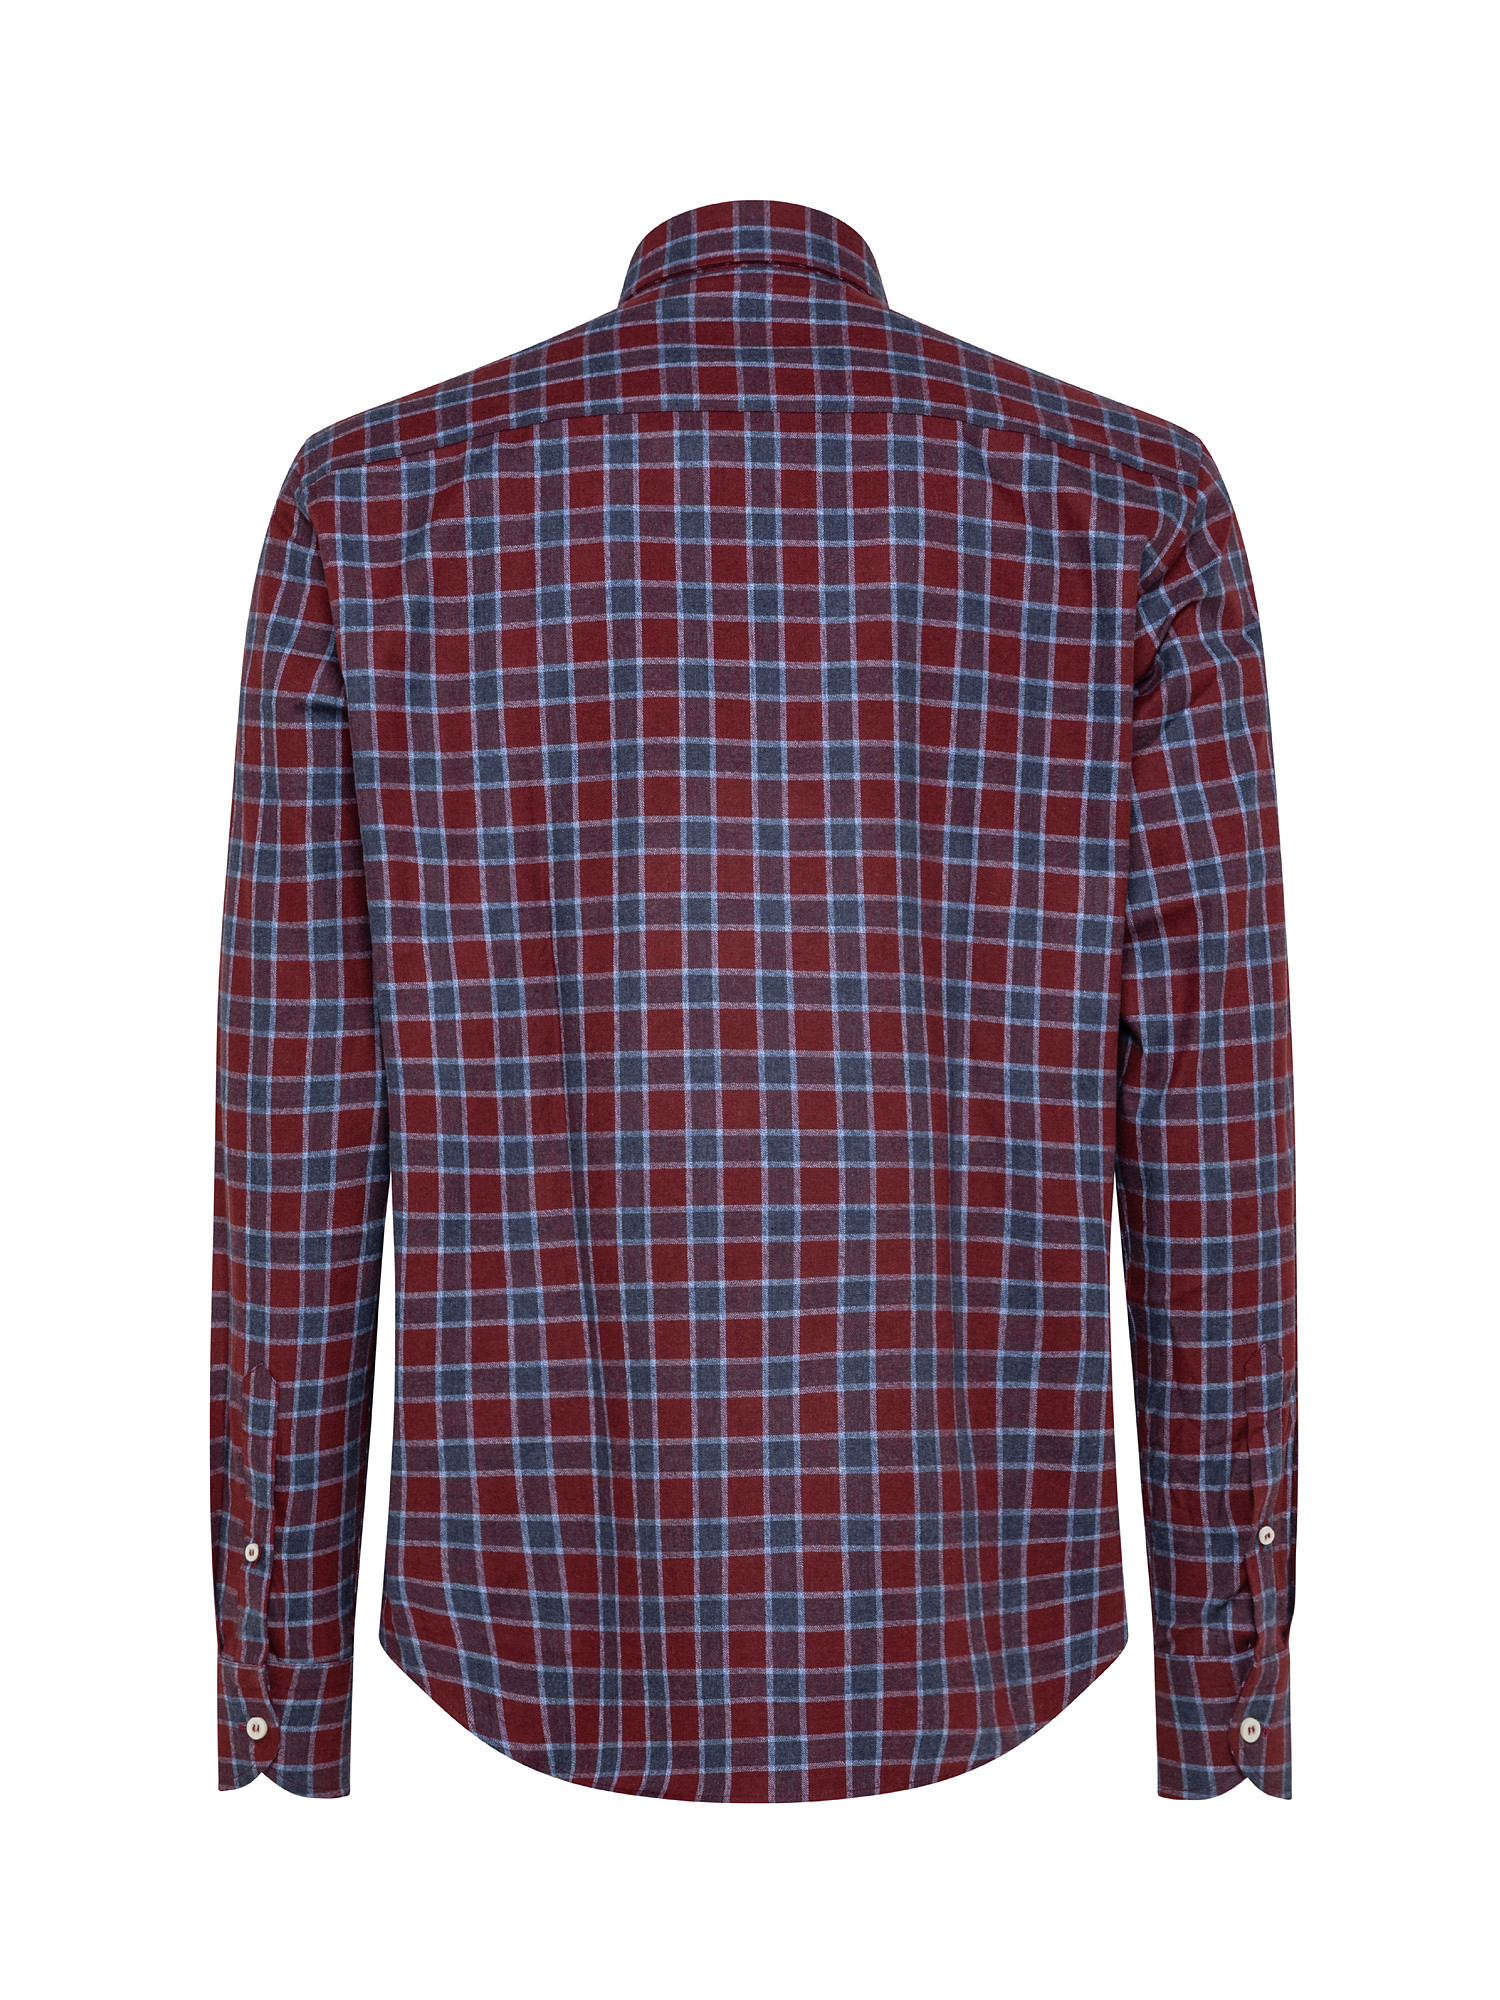 Melange flannel shirt, Multicolor, large image number 1